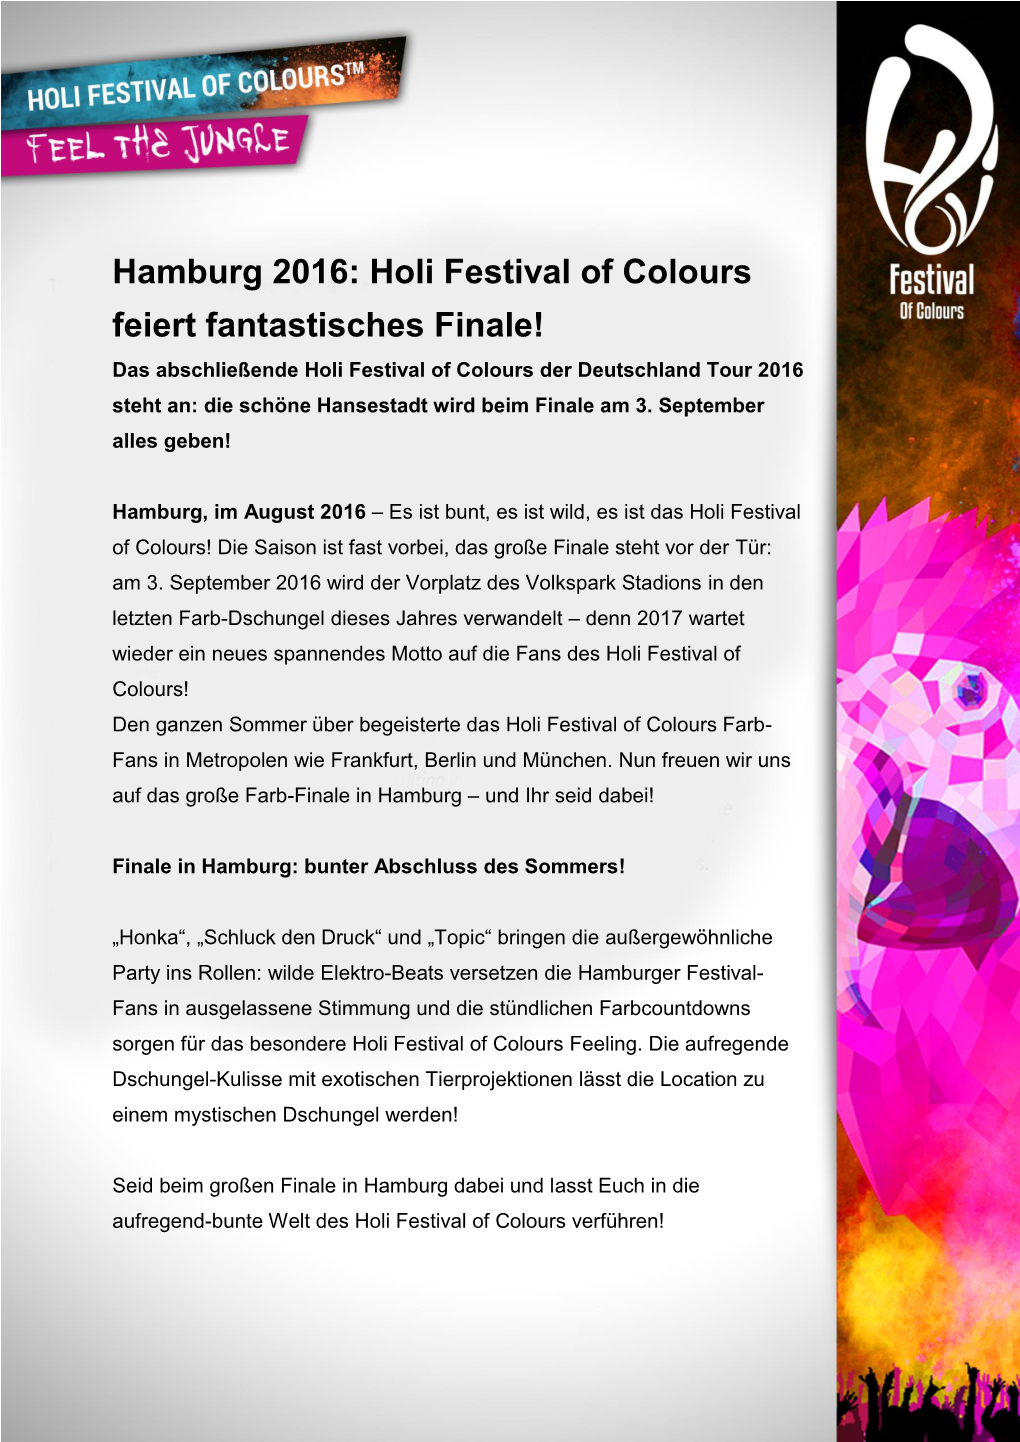 Hamburg 2016: Holi Festival of Colours Feiert Fantastisches Finale!